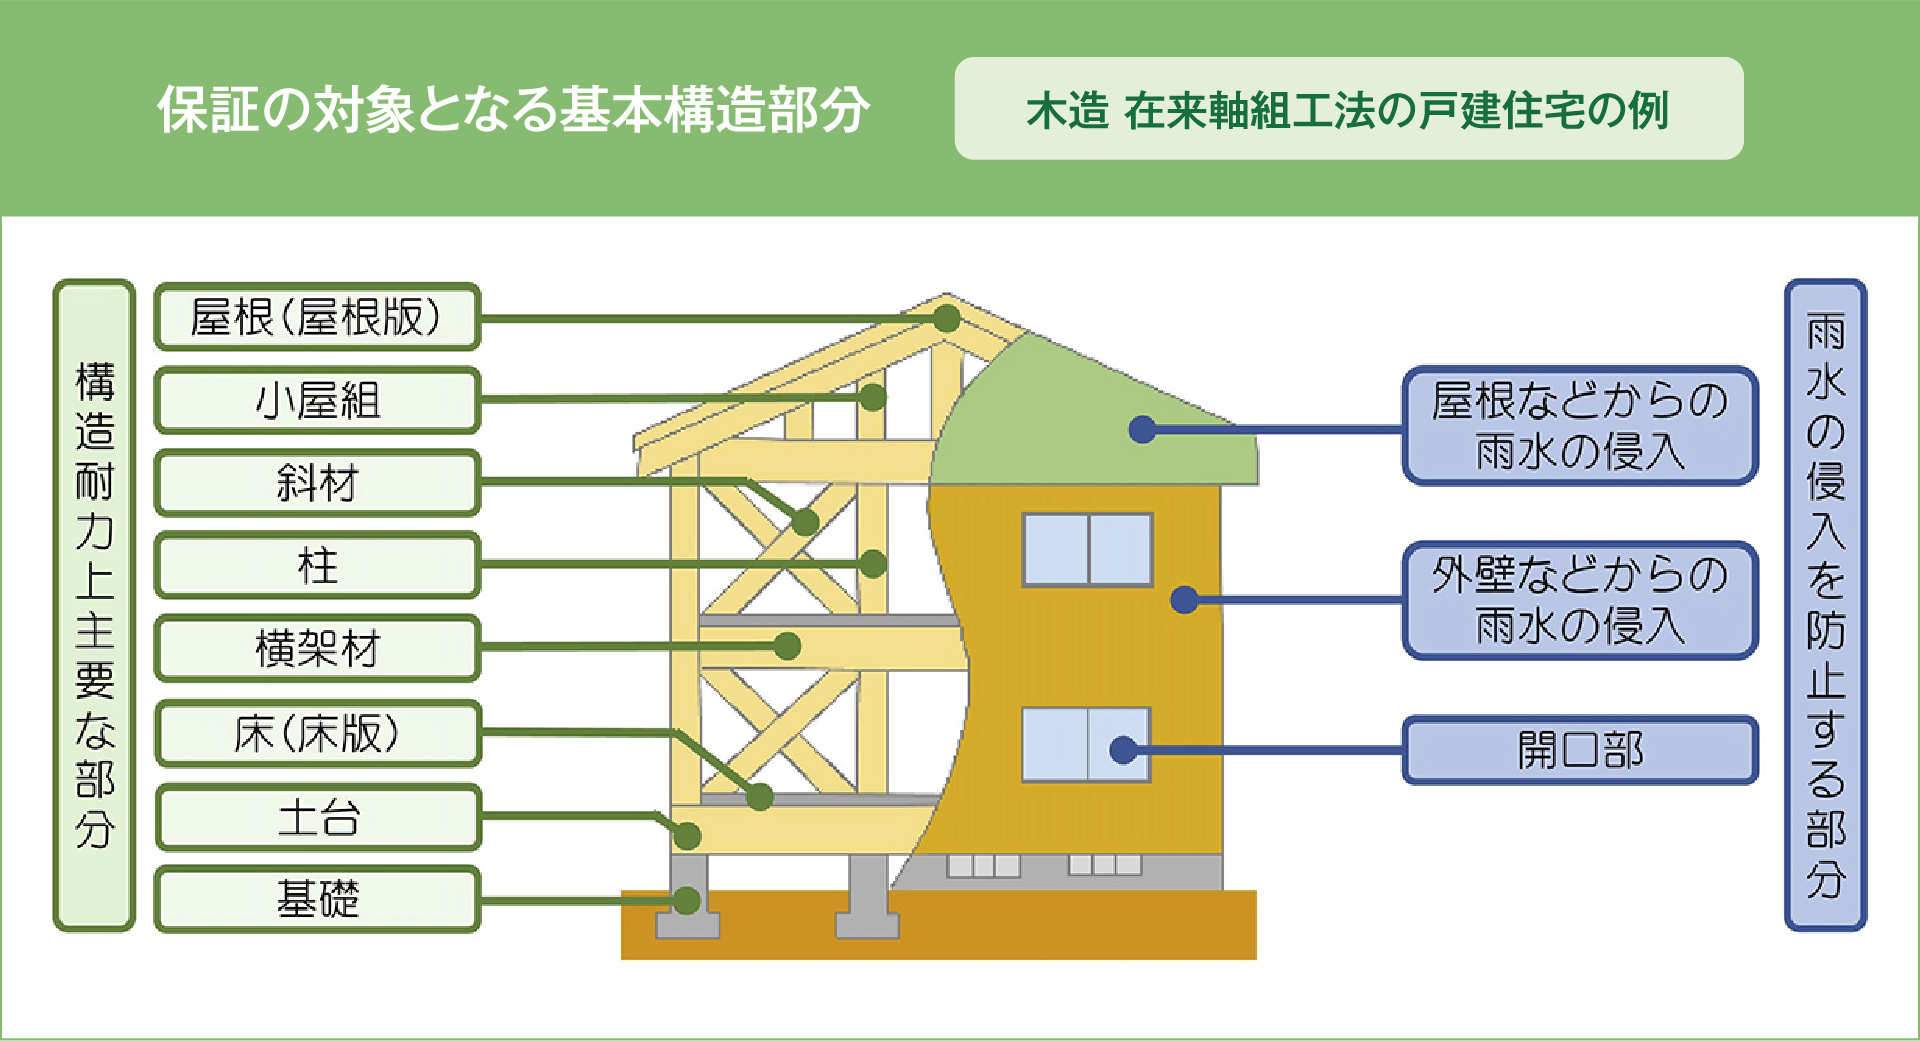 保証の対象となる基本構造部分 木造 在来軸組工法の戸建住宅の例